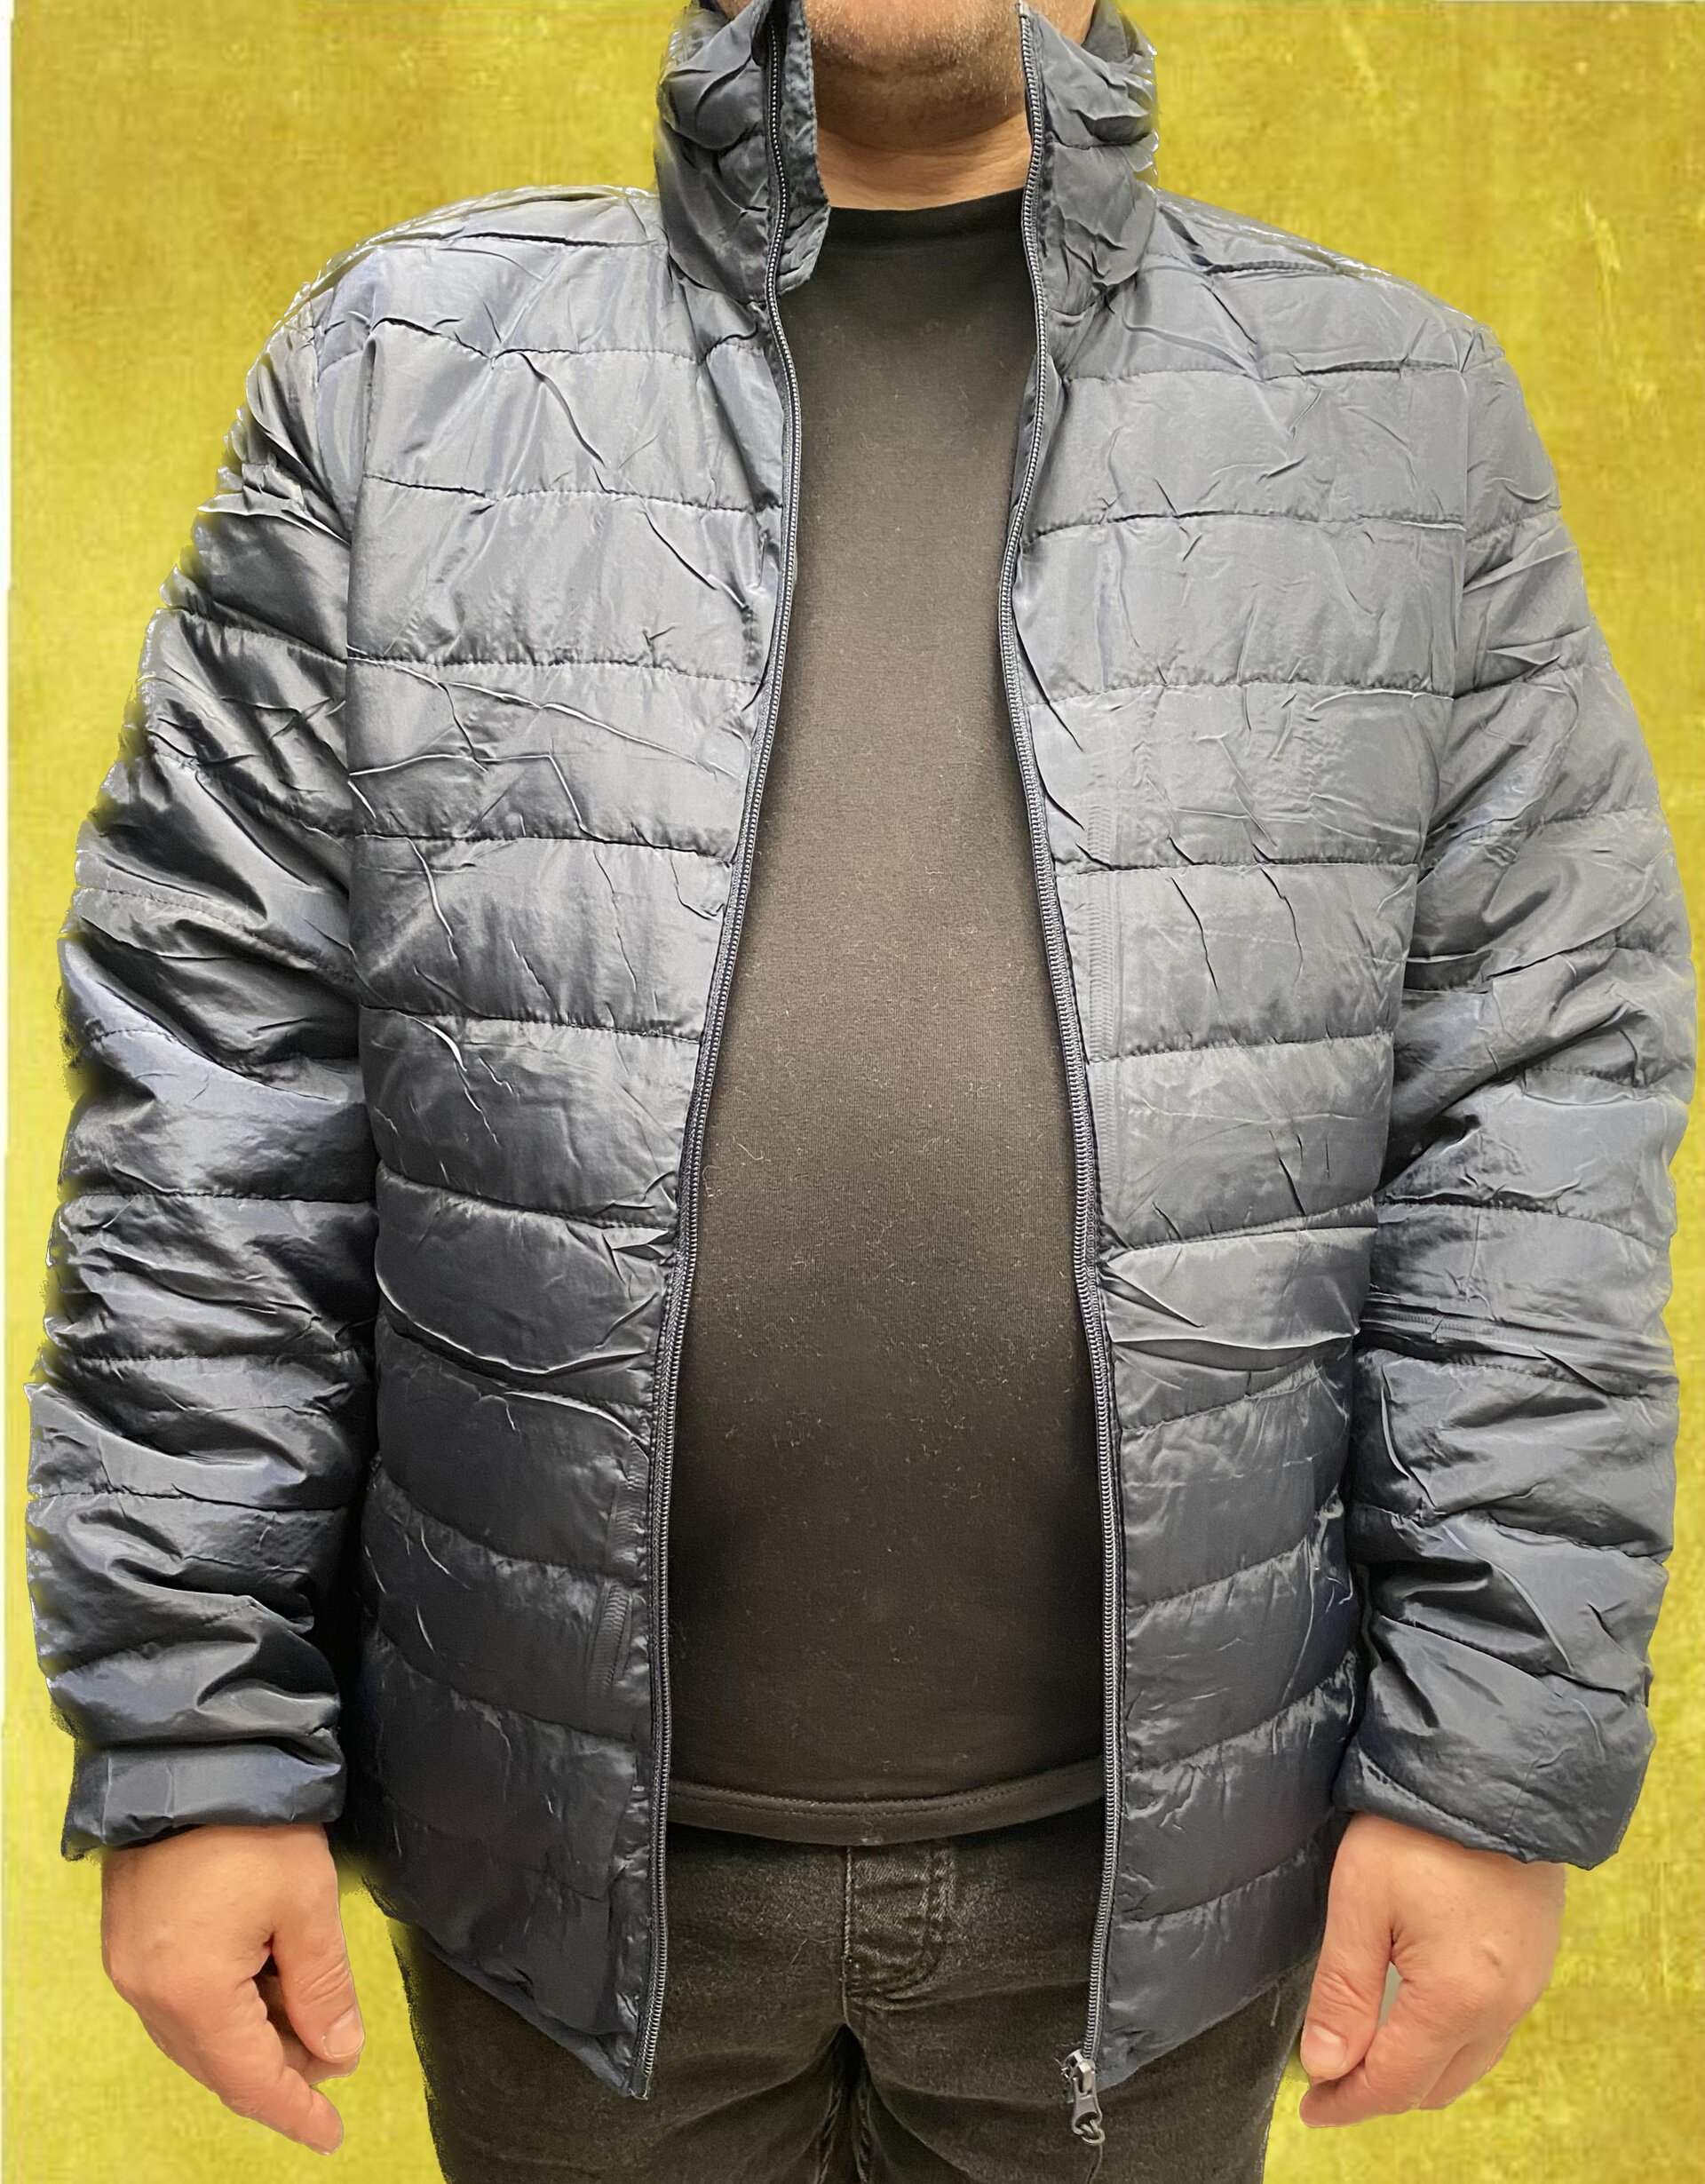 Де купити чоловічу куртку великого розміру на весну в Україні - фото pic_9dd6c970083104aee112fd63e3fc15d9_1920x9000_1.jpg